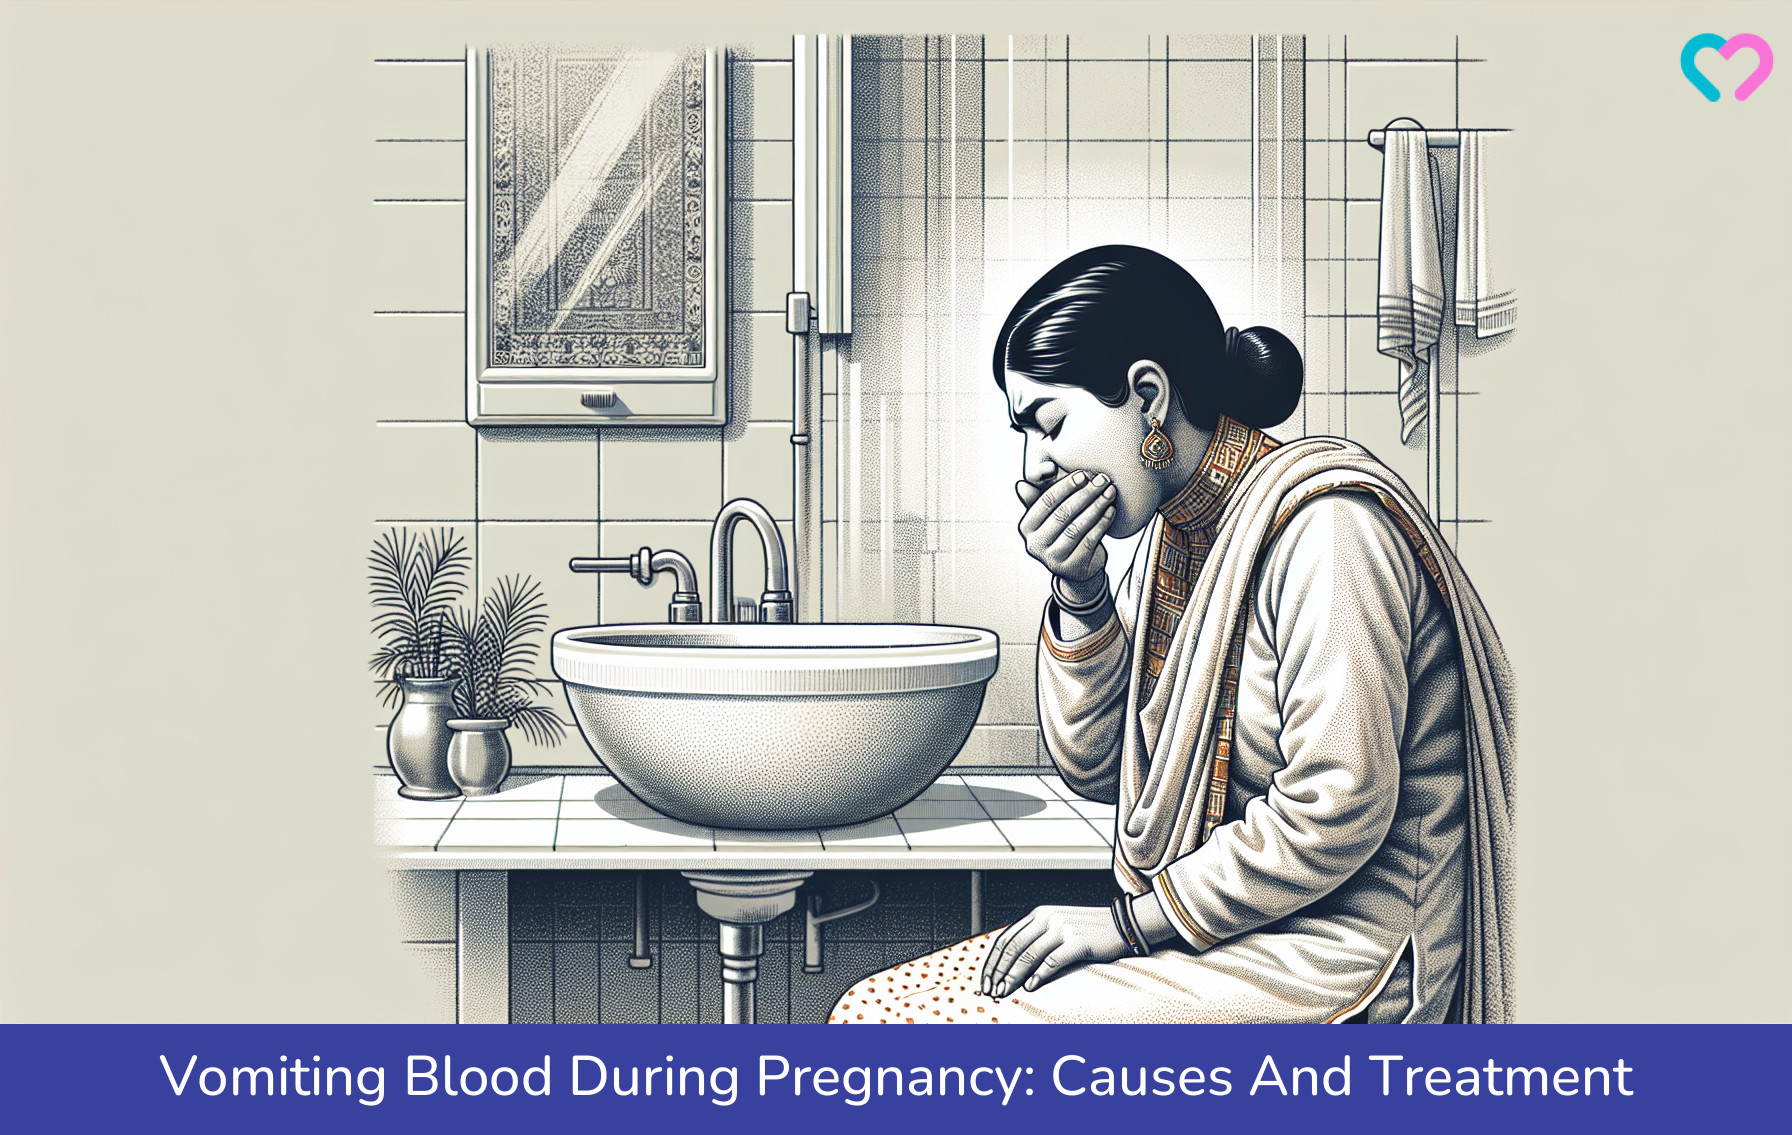 blood in vomit during pregnancy_illustration